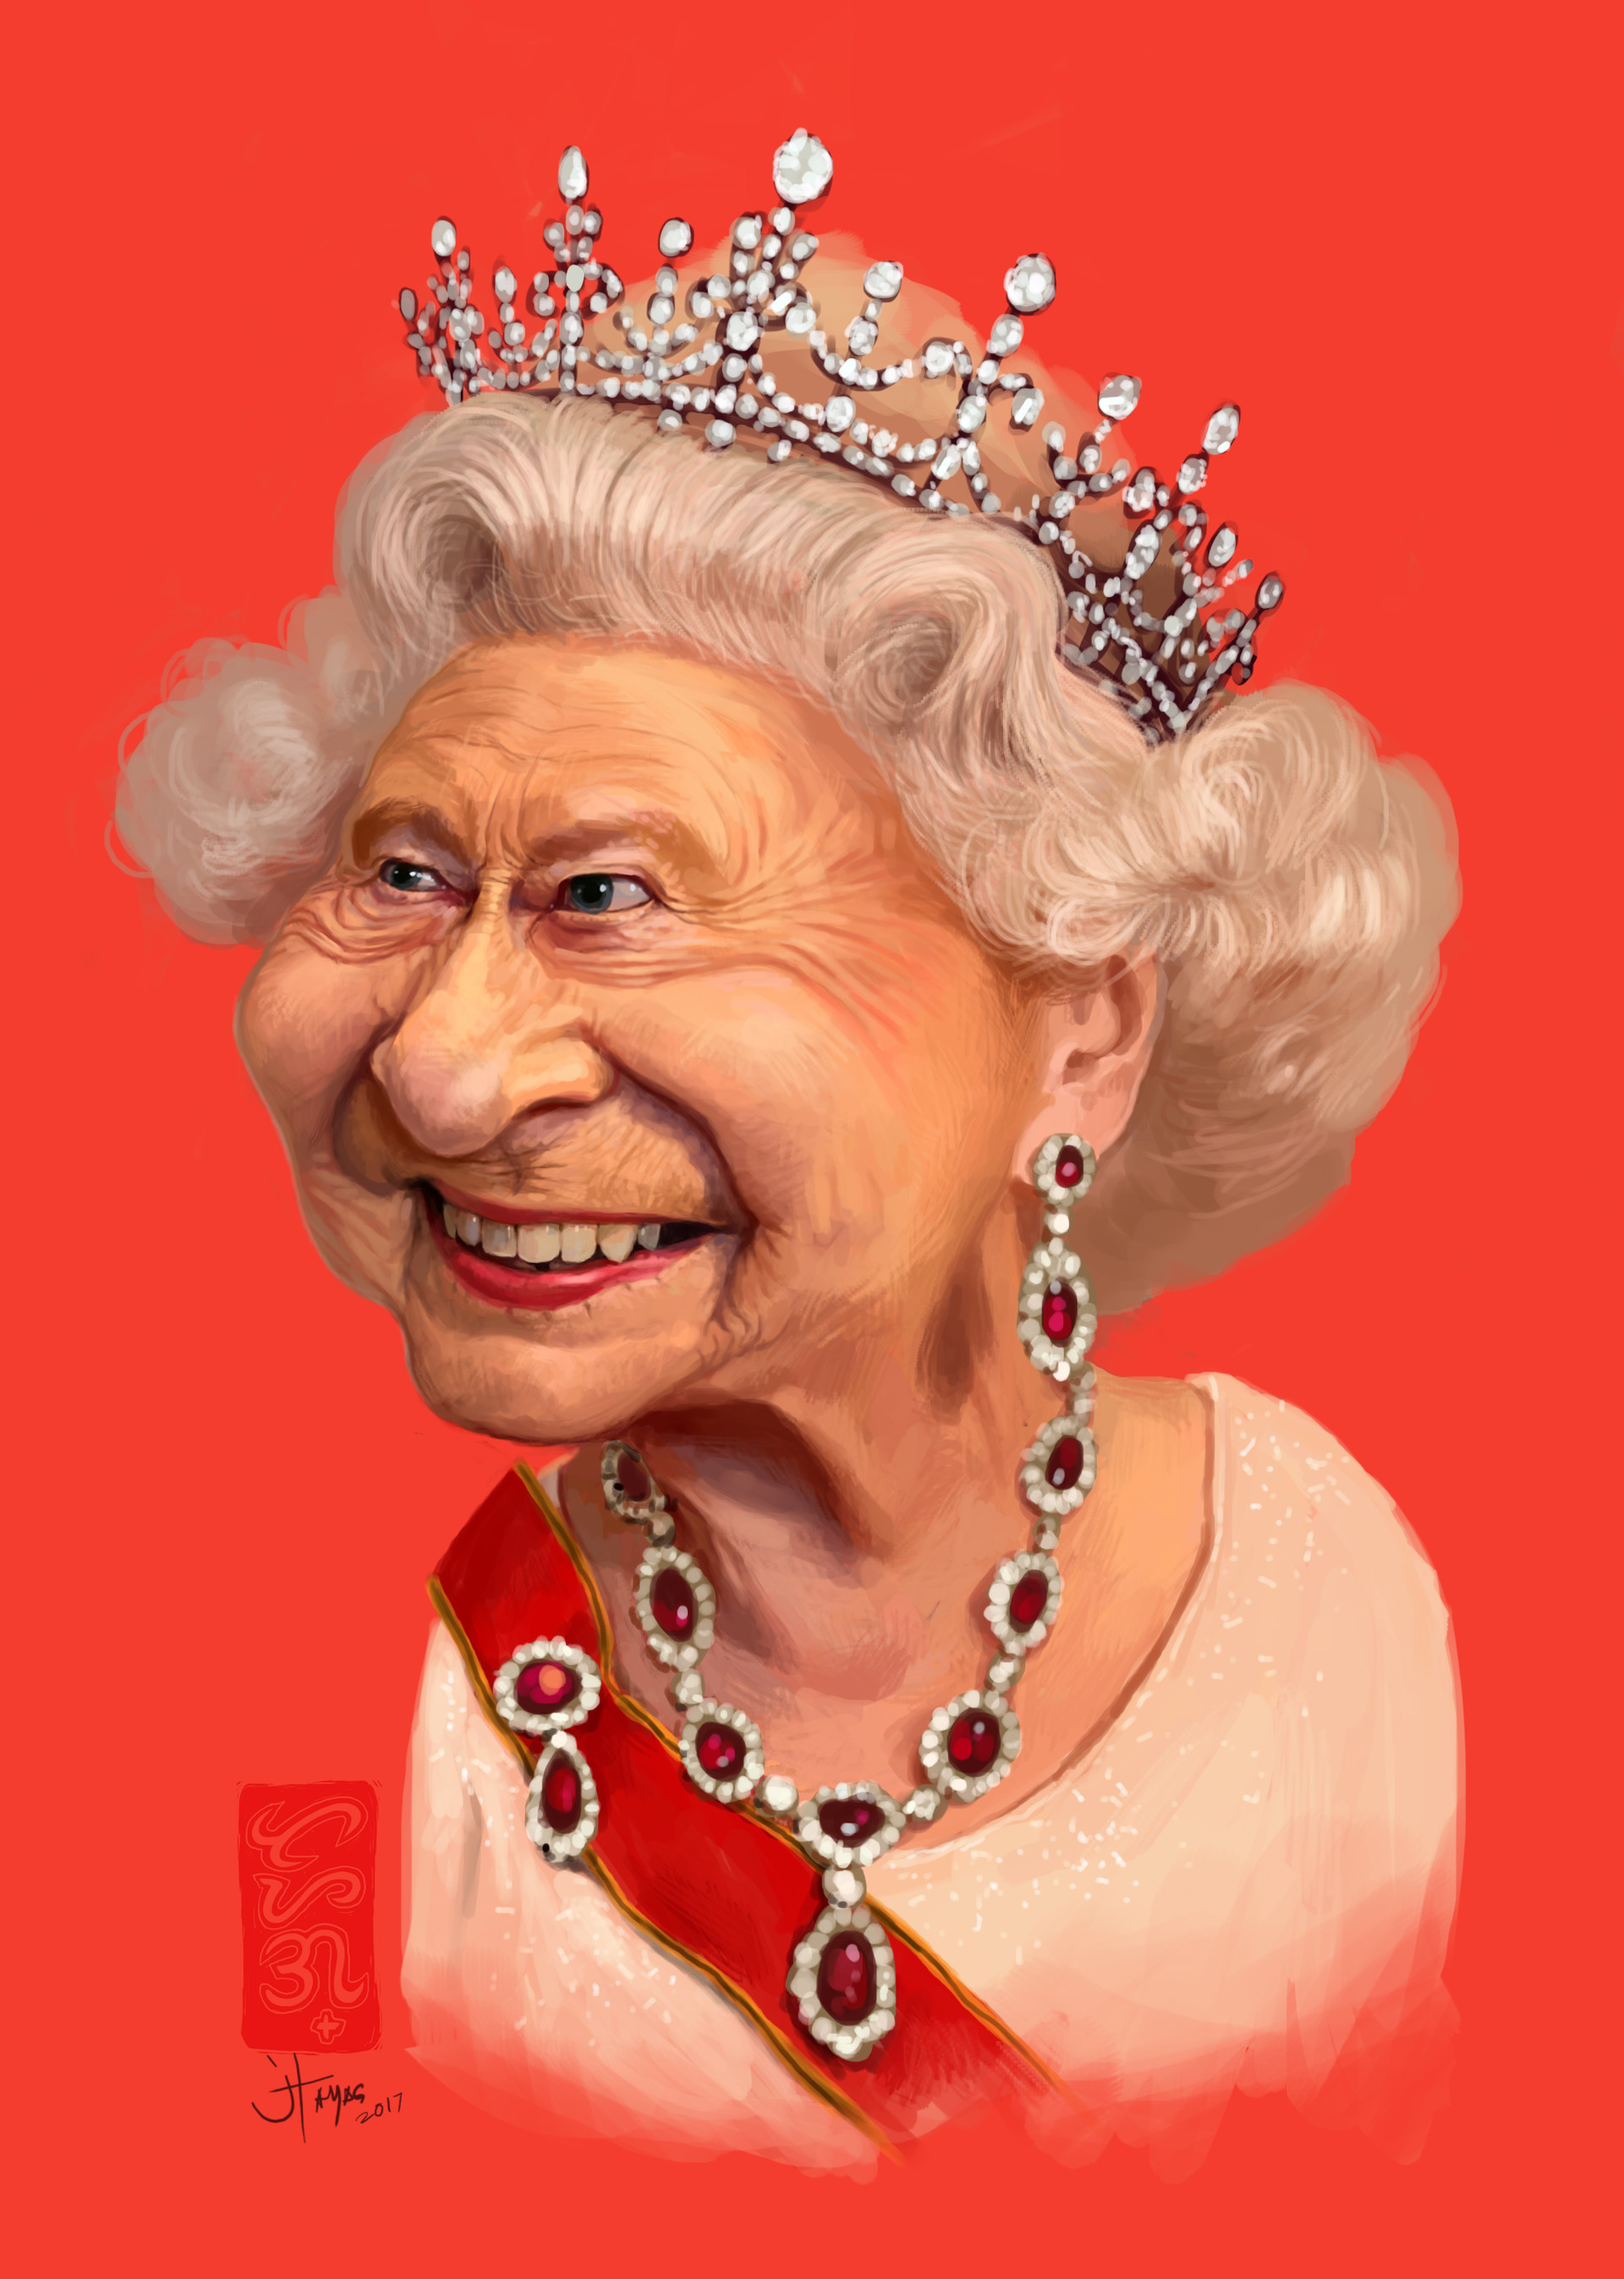 ArtStation - Queen Elizabeth II, Jimmy Tayag